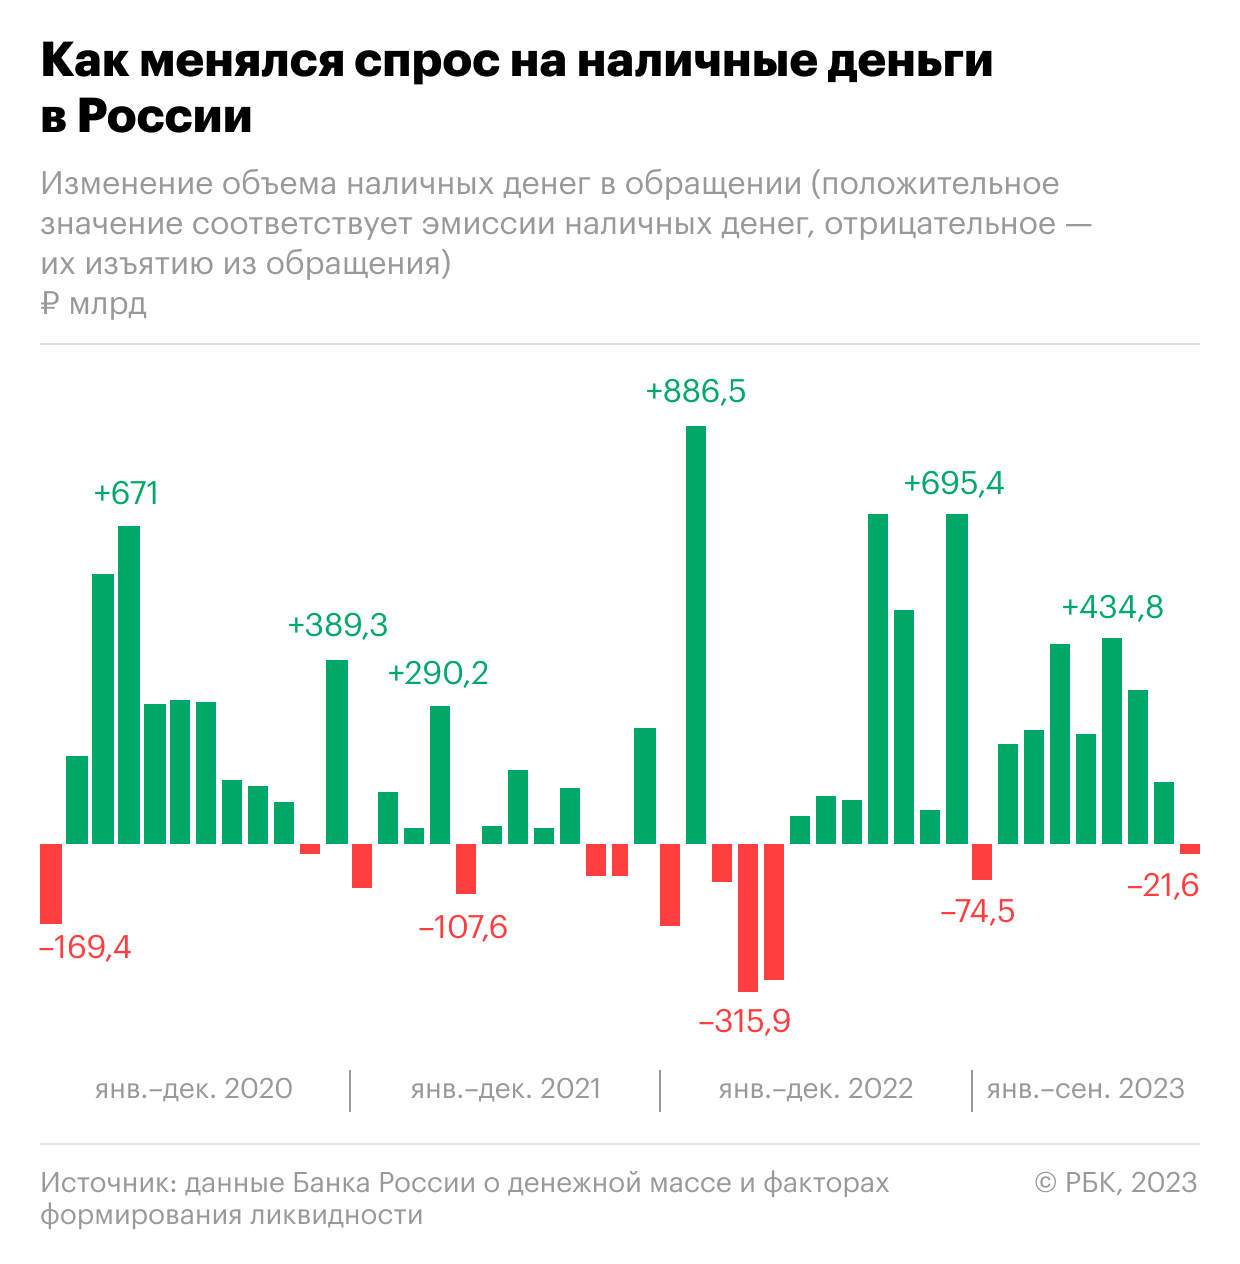 Россияне впервые за 1,5 года снизили объем налички на руках. Инфографика